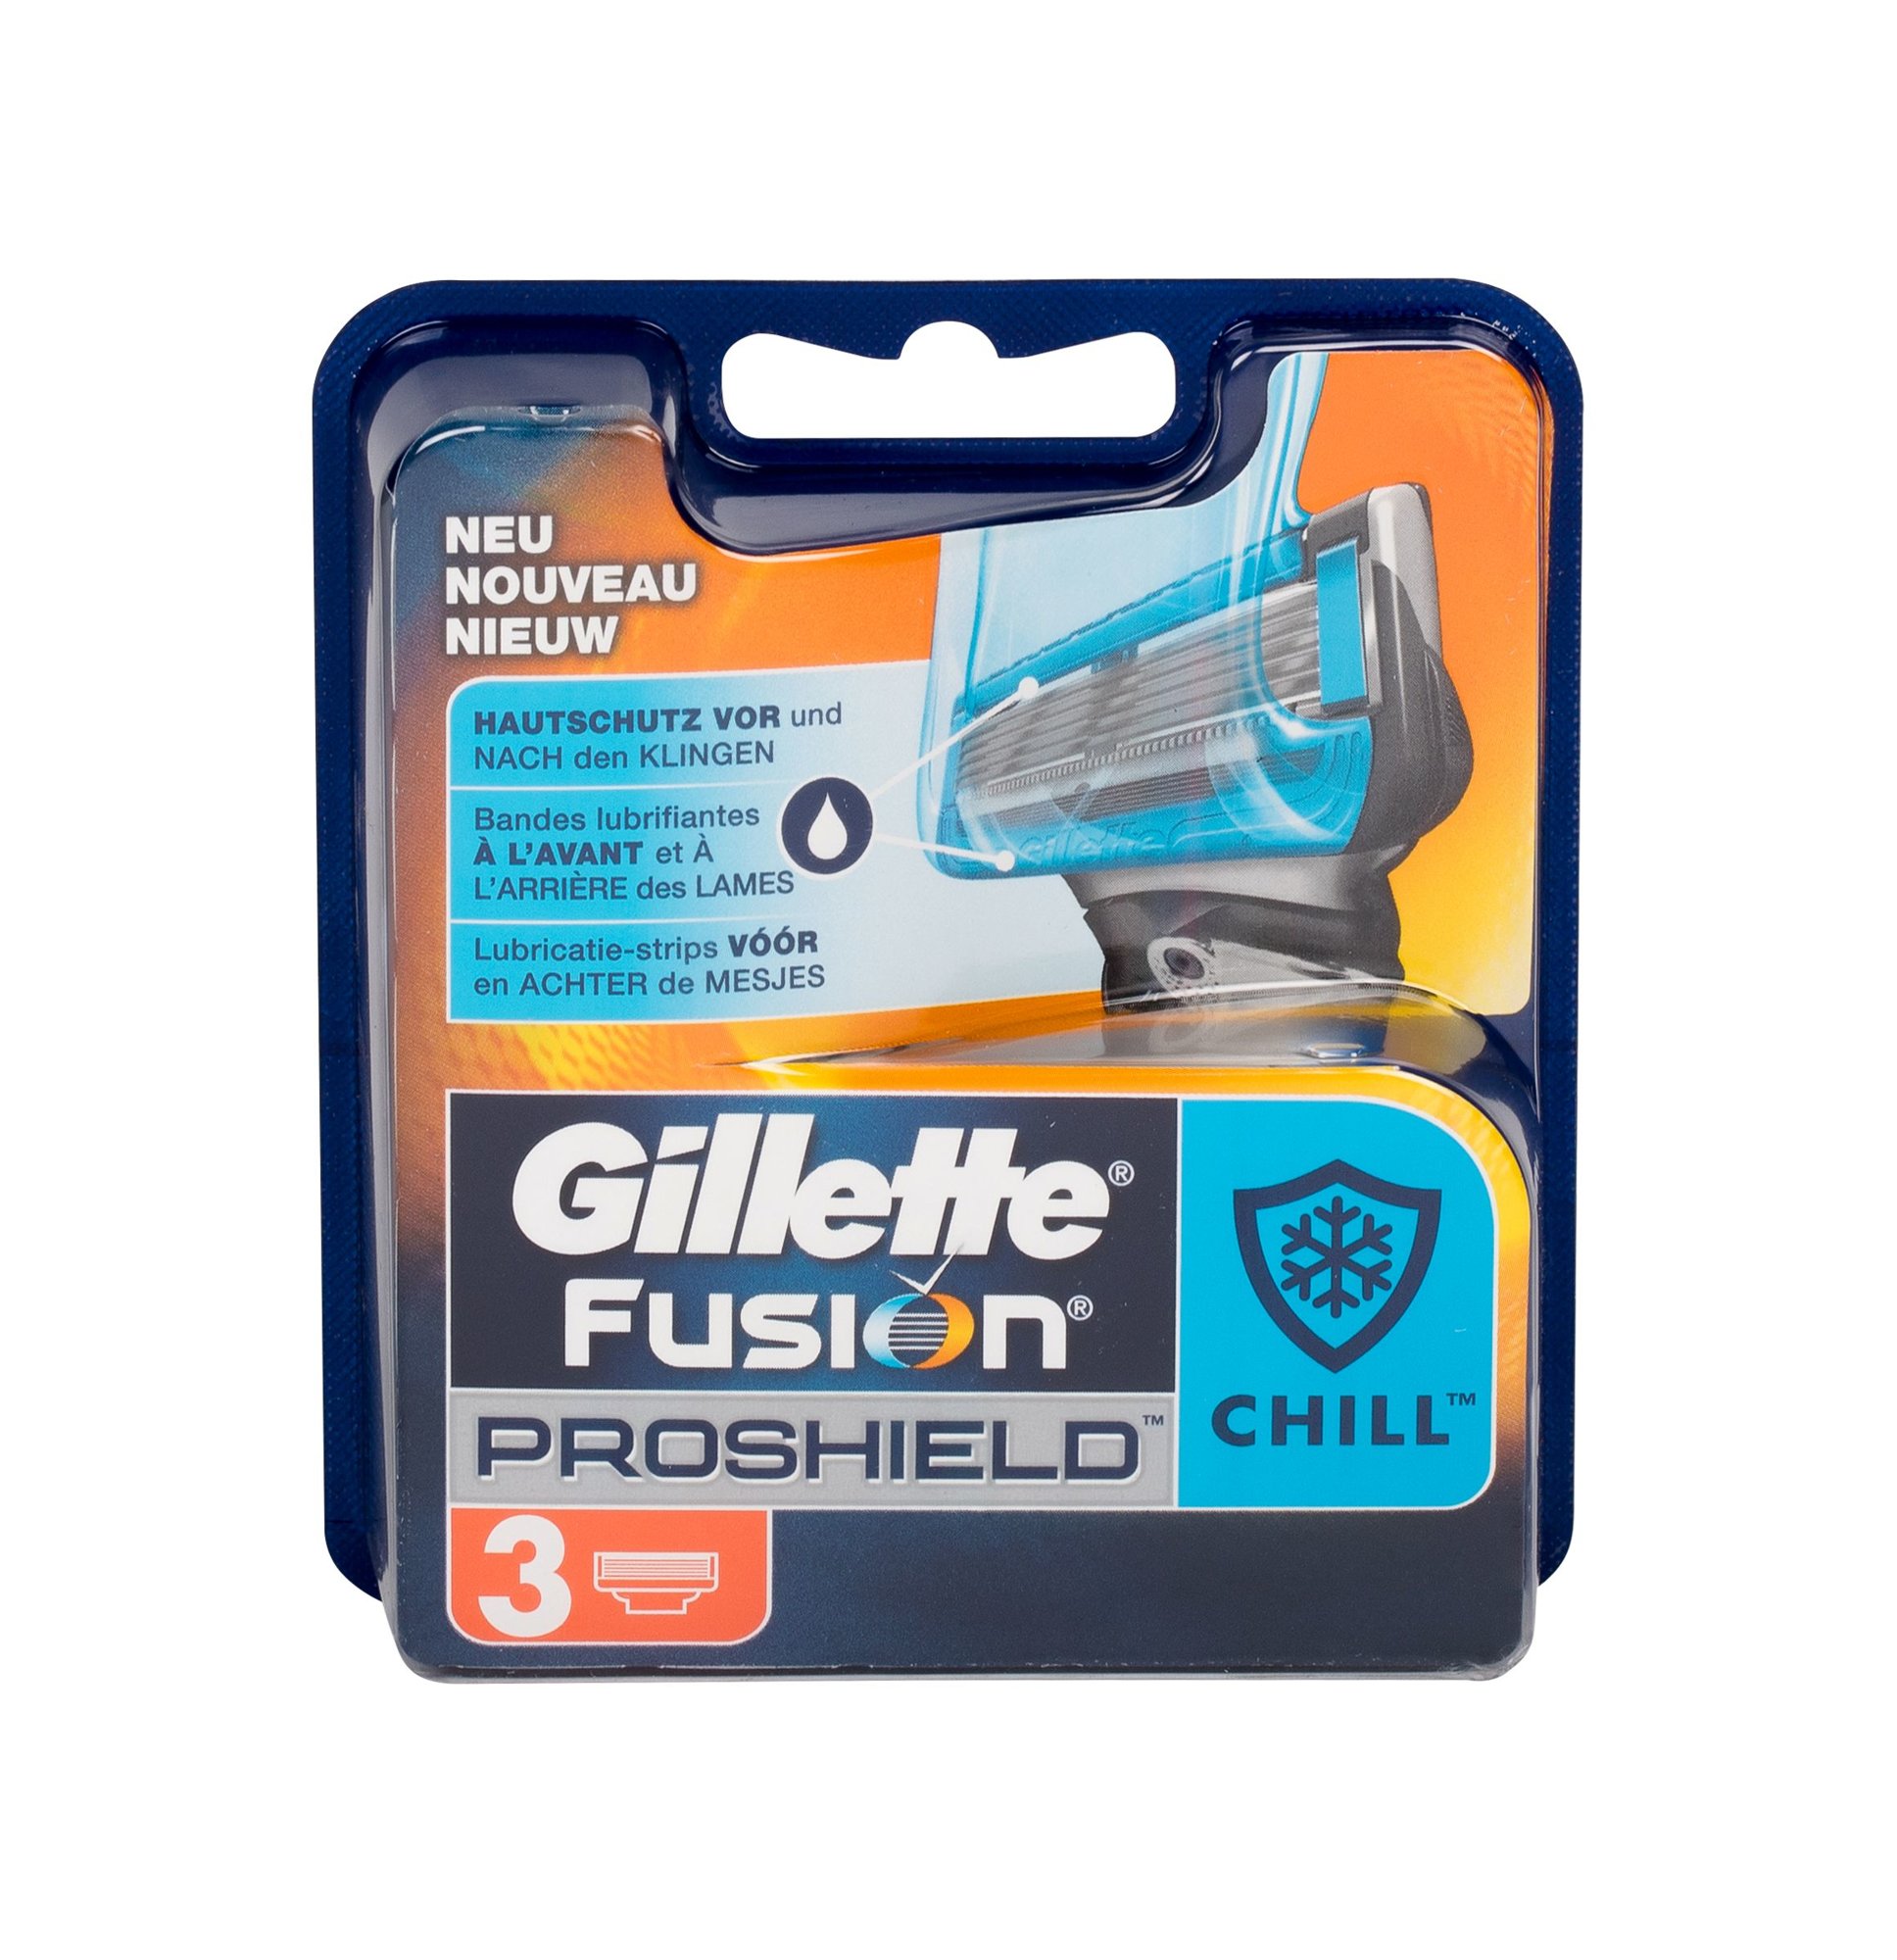 Gillette Fusion Proshield Chill skustuvo galvutė